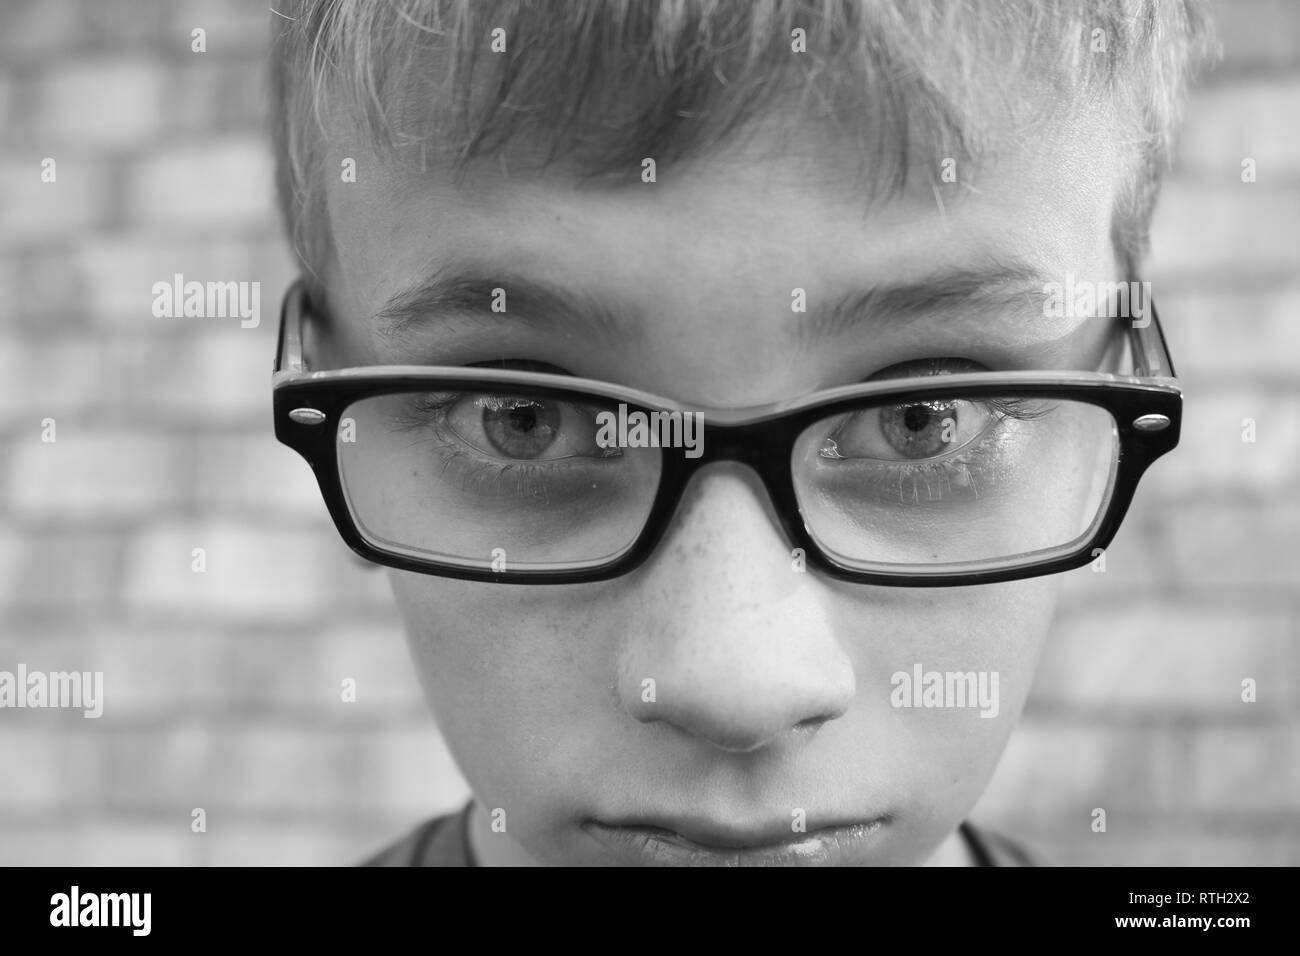 Un plan macro noir et blanc de colère preteen boy wearing glasses Banque D'Images